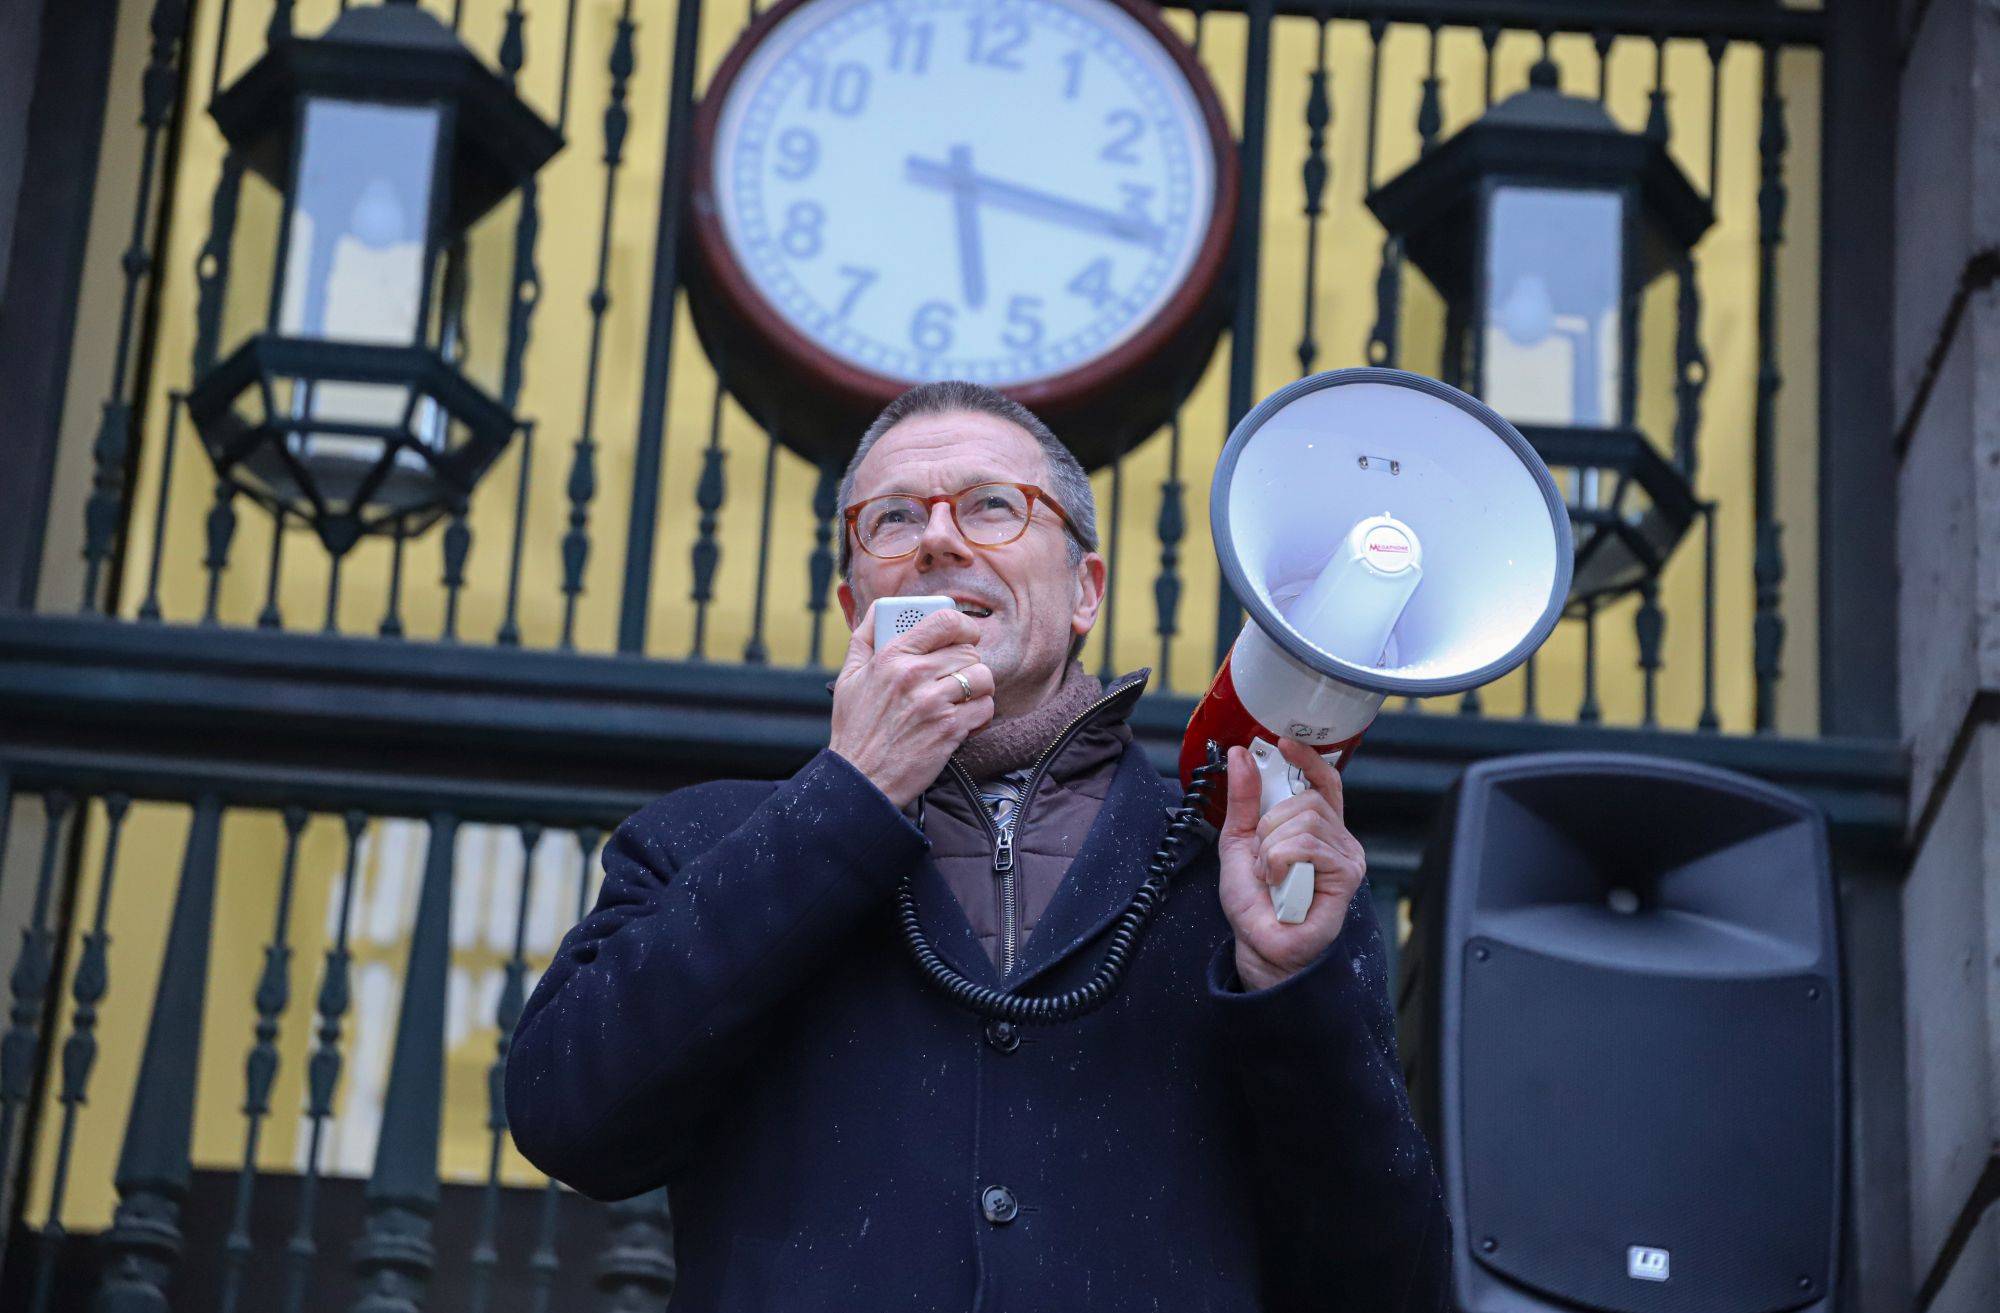  Oberbürgermeister Uwe Schneidewind bei der Solidaritätsküundgebung am Donnerstag vor dem Rathaus. 